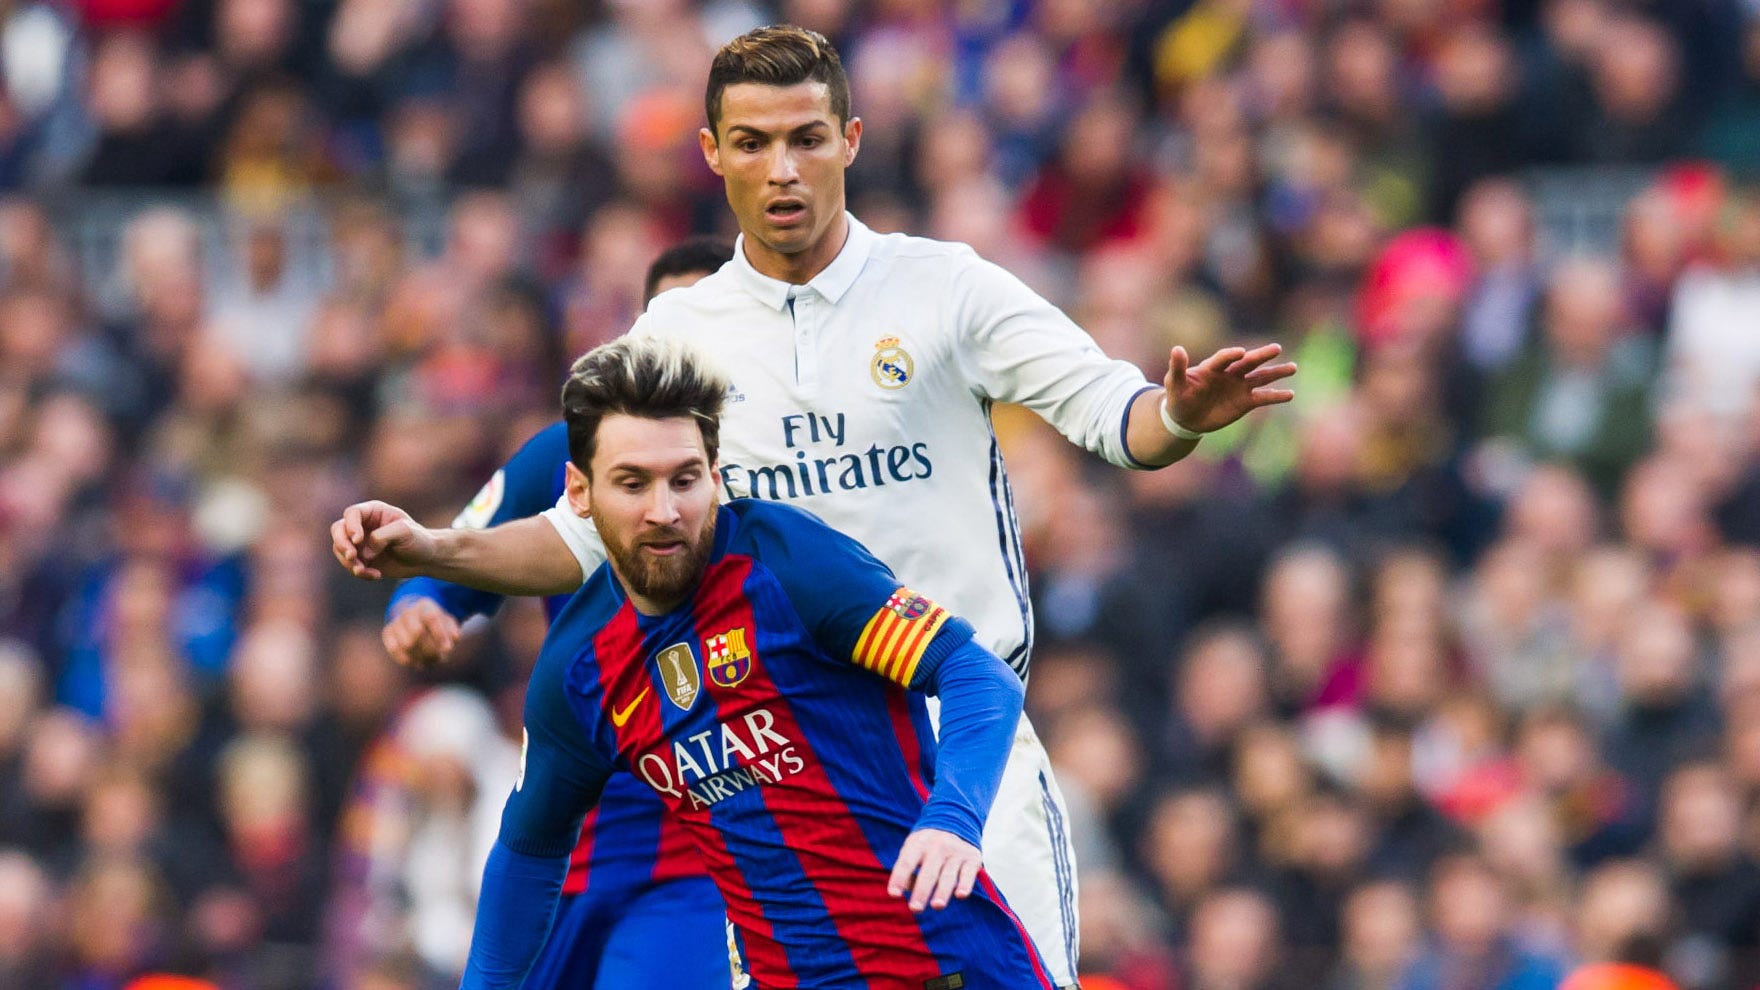 Ronaldo và Messi luôn là những đối thủ đáng gờm trong làng bóng đá. Goal.com cung cấp cho bạn nhiều thông tin hữu ích để so sánh giữa hai ngôi sao này, từ kỷ lục bàn thắng và các đặc điểm chơi bóng, cho đến cách cả hai chọn trang phục của mình khi thi đấu.